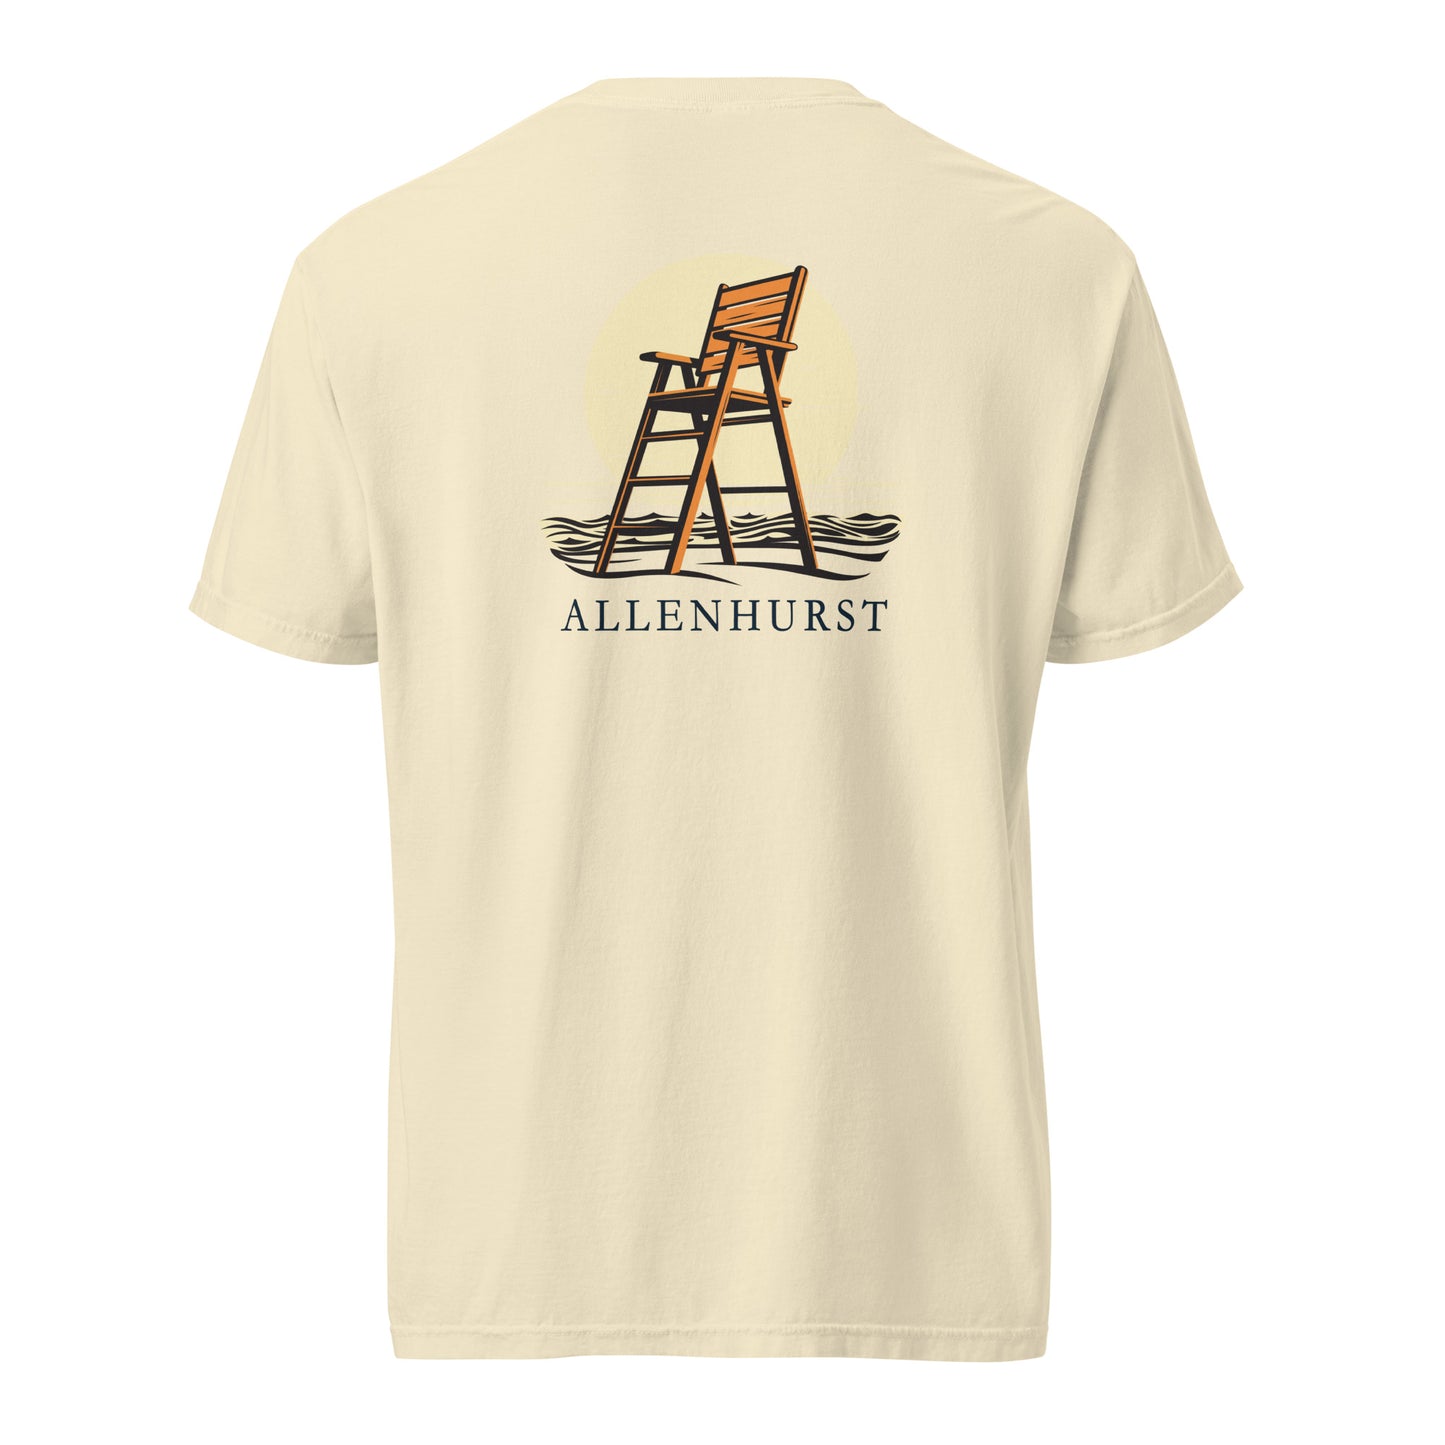 Allenhurst garment-dyed heavyweight t-shirt